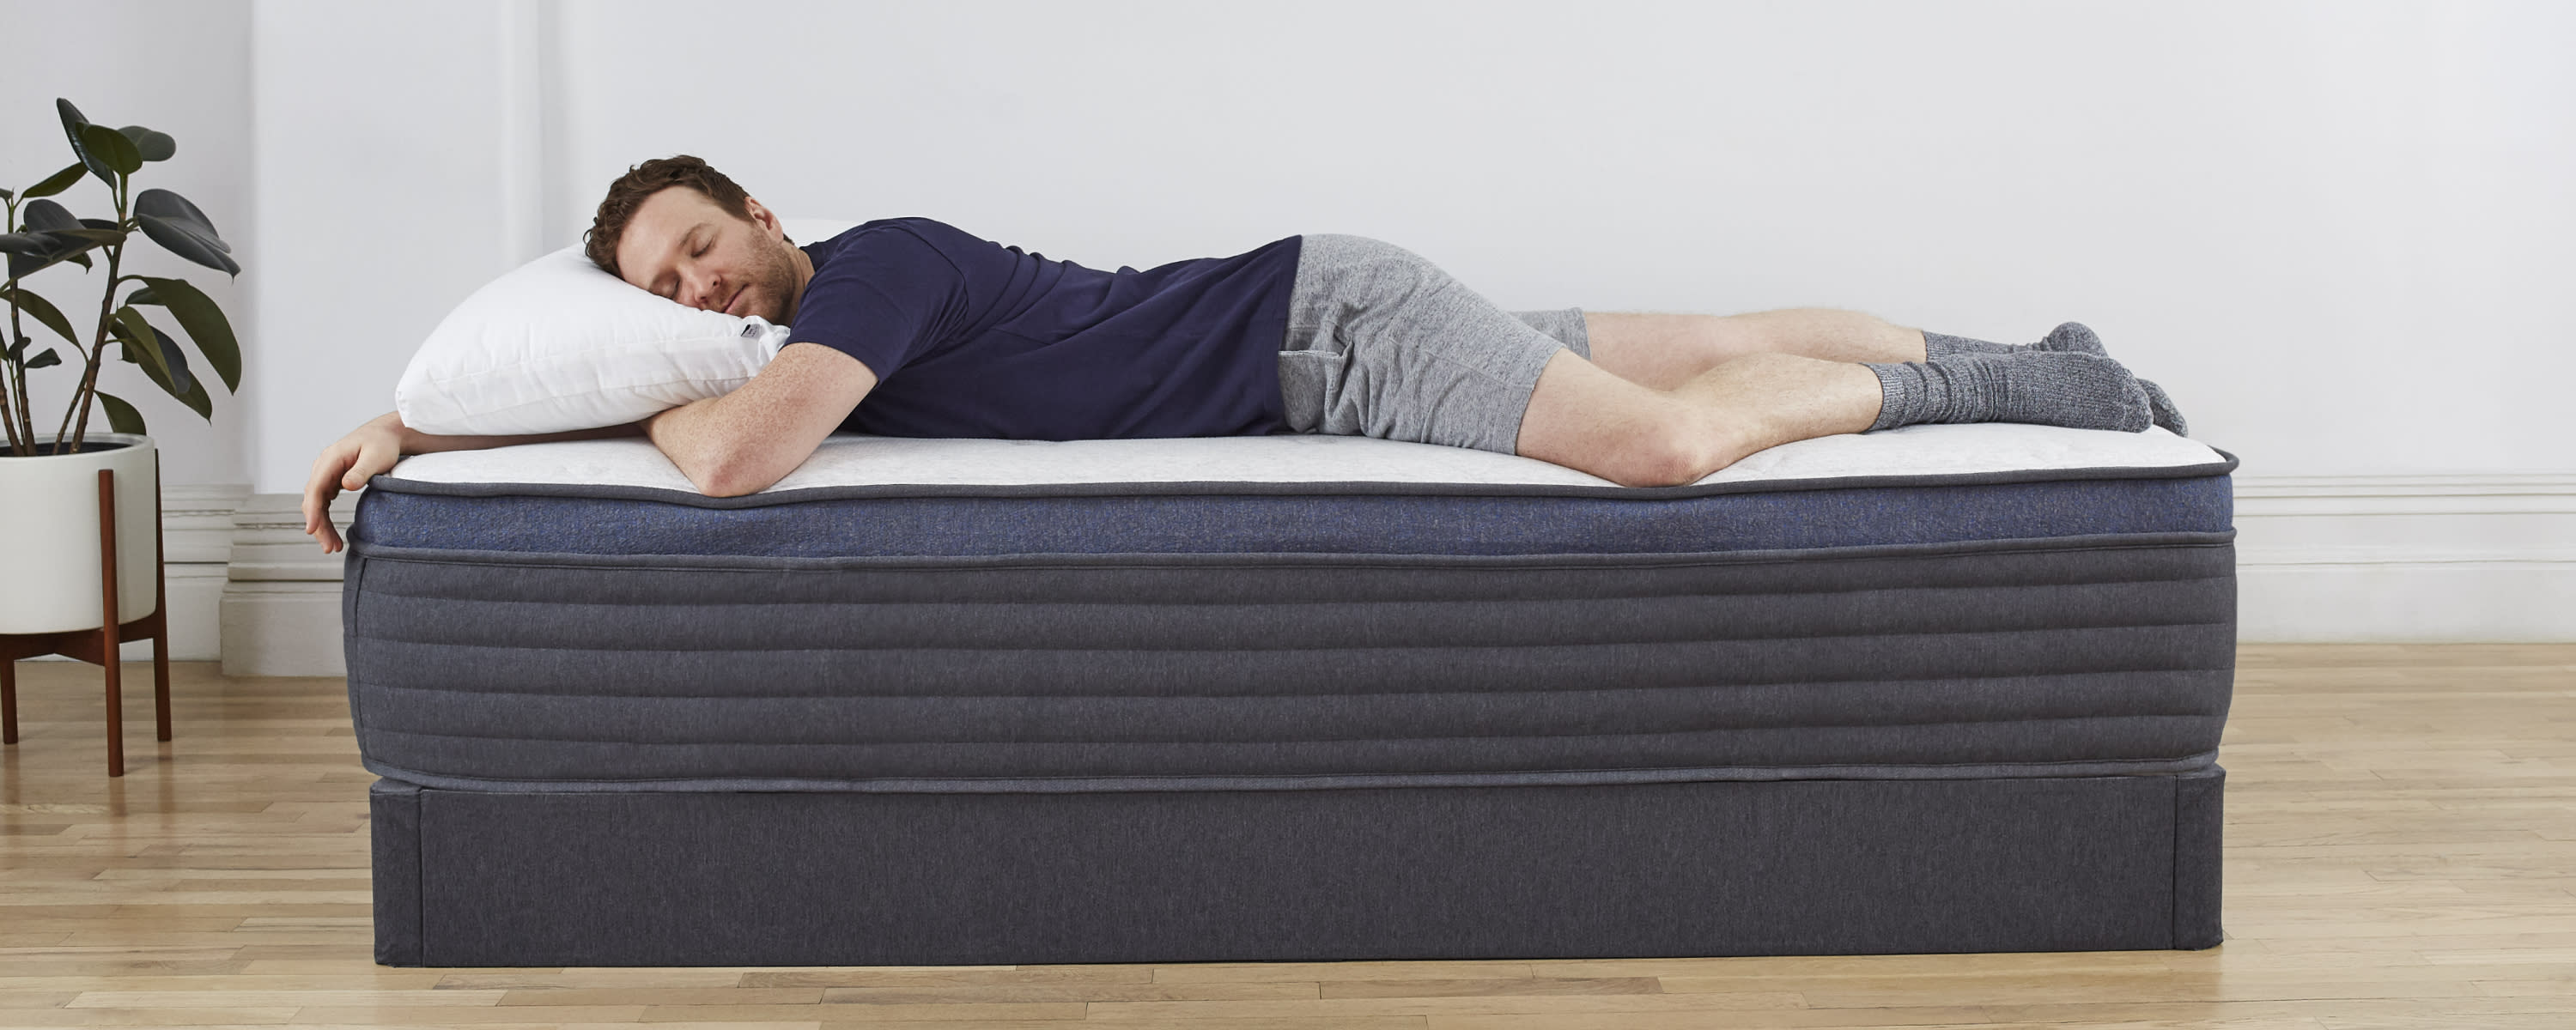 Man-laying-on-Helix-mattress